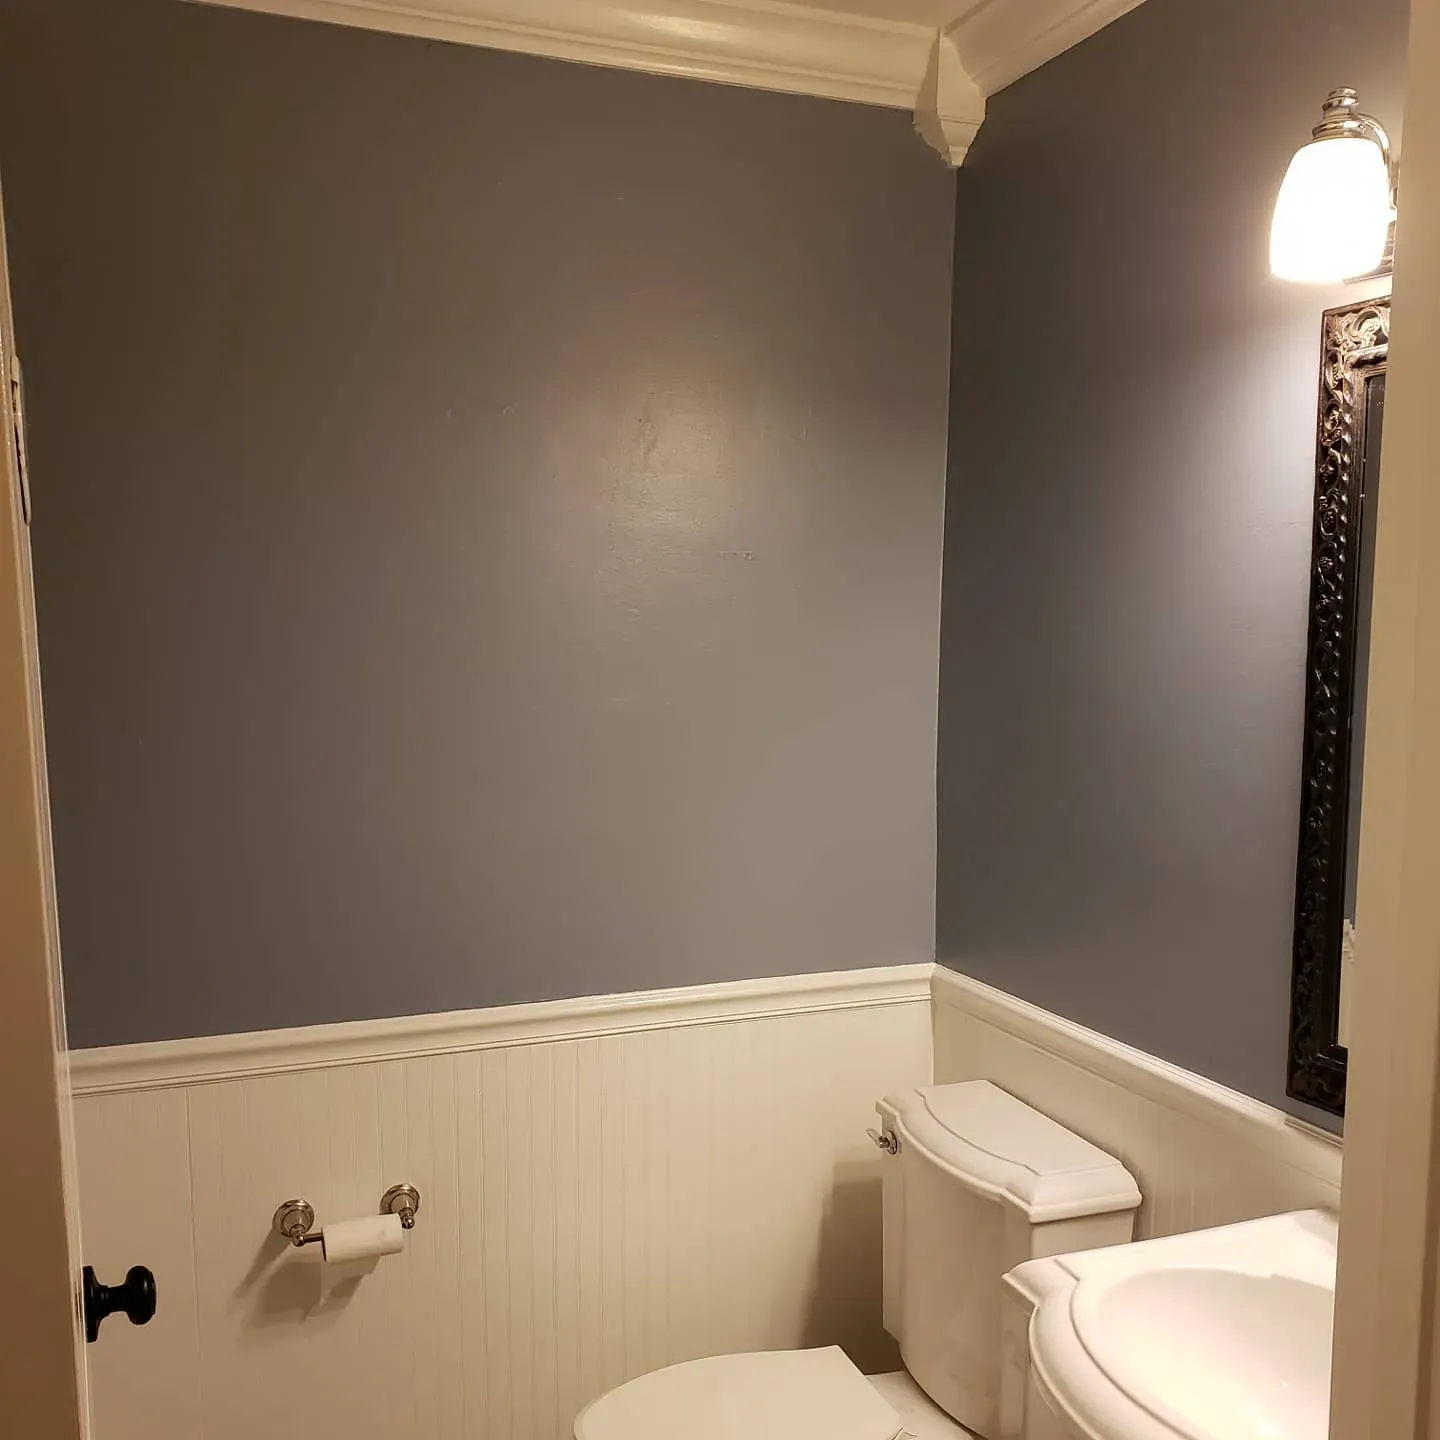 Behr Teton Blue bathroom color